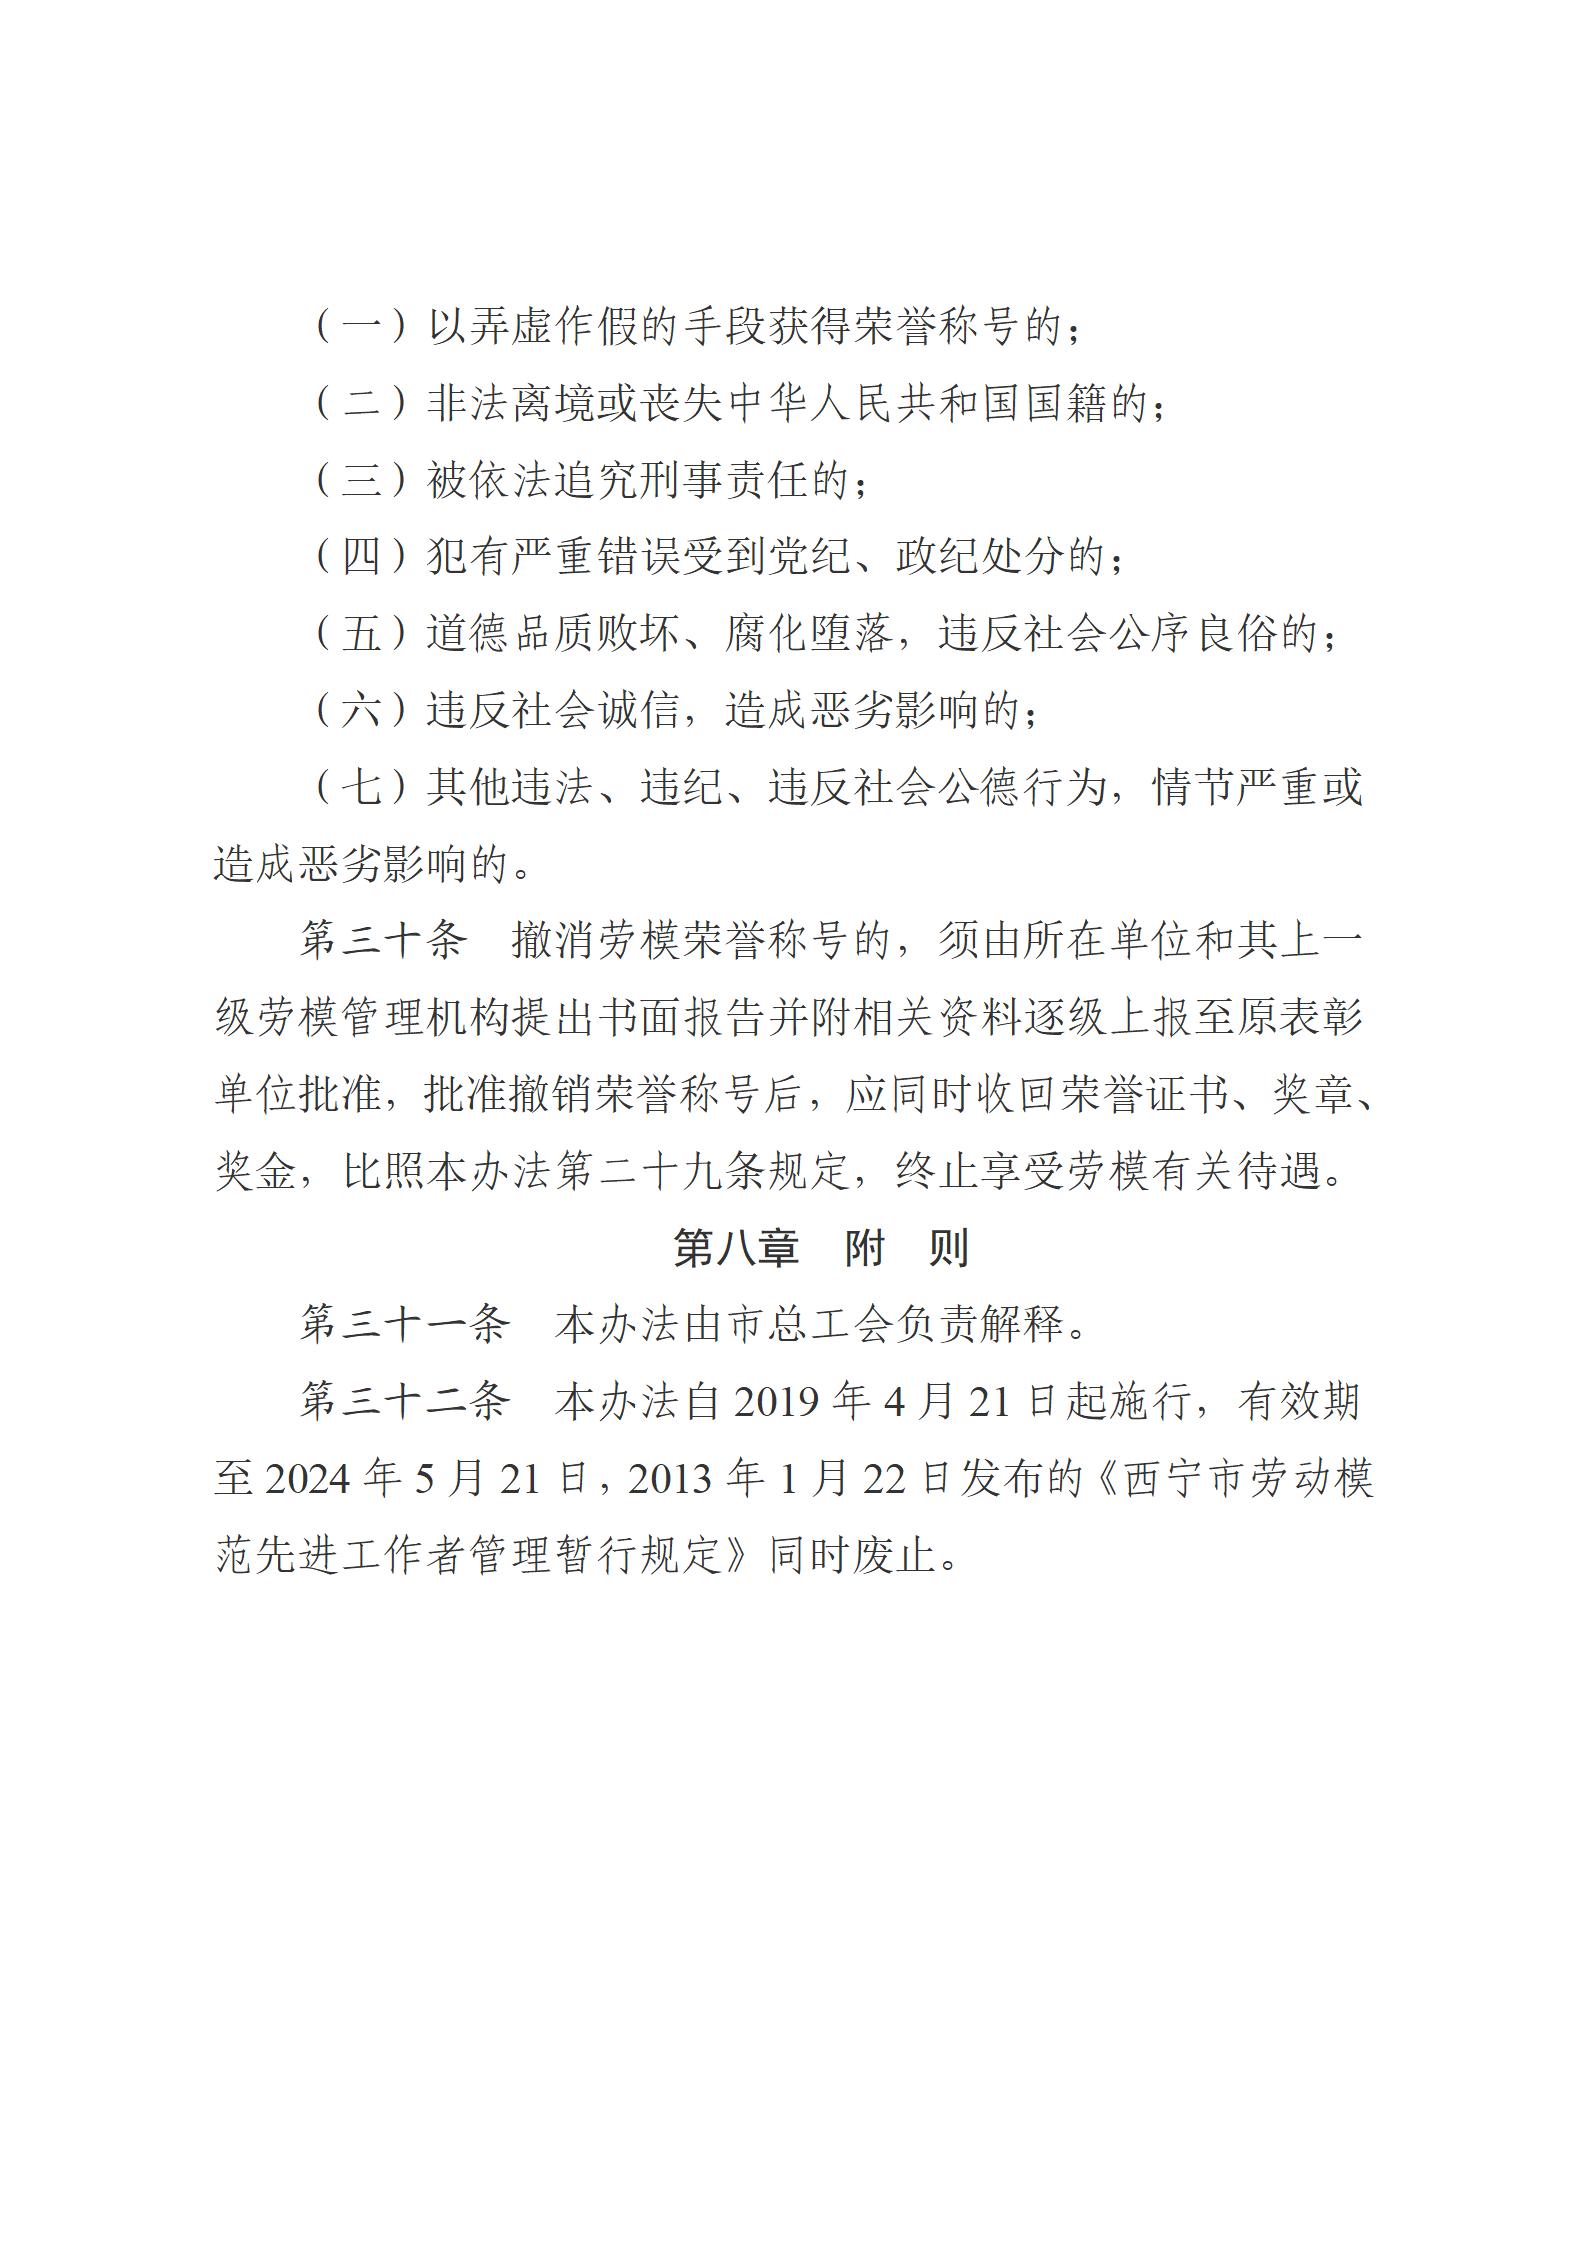 1.西宁市劳动模范评选和管理工作办法(1)_11.jpg